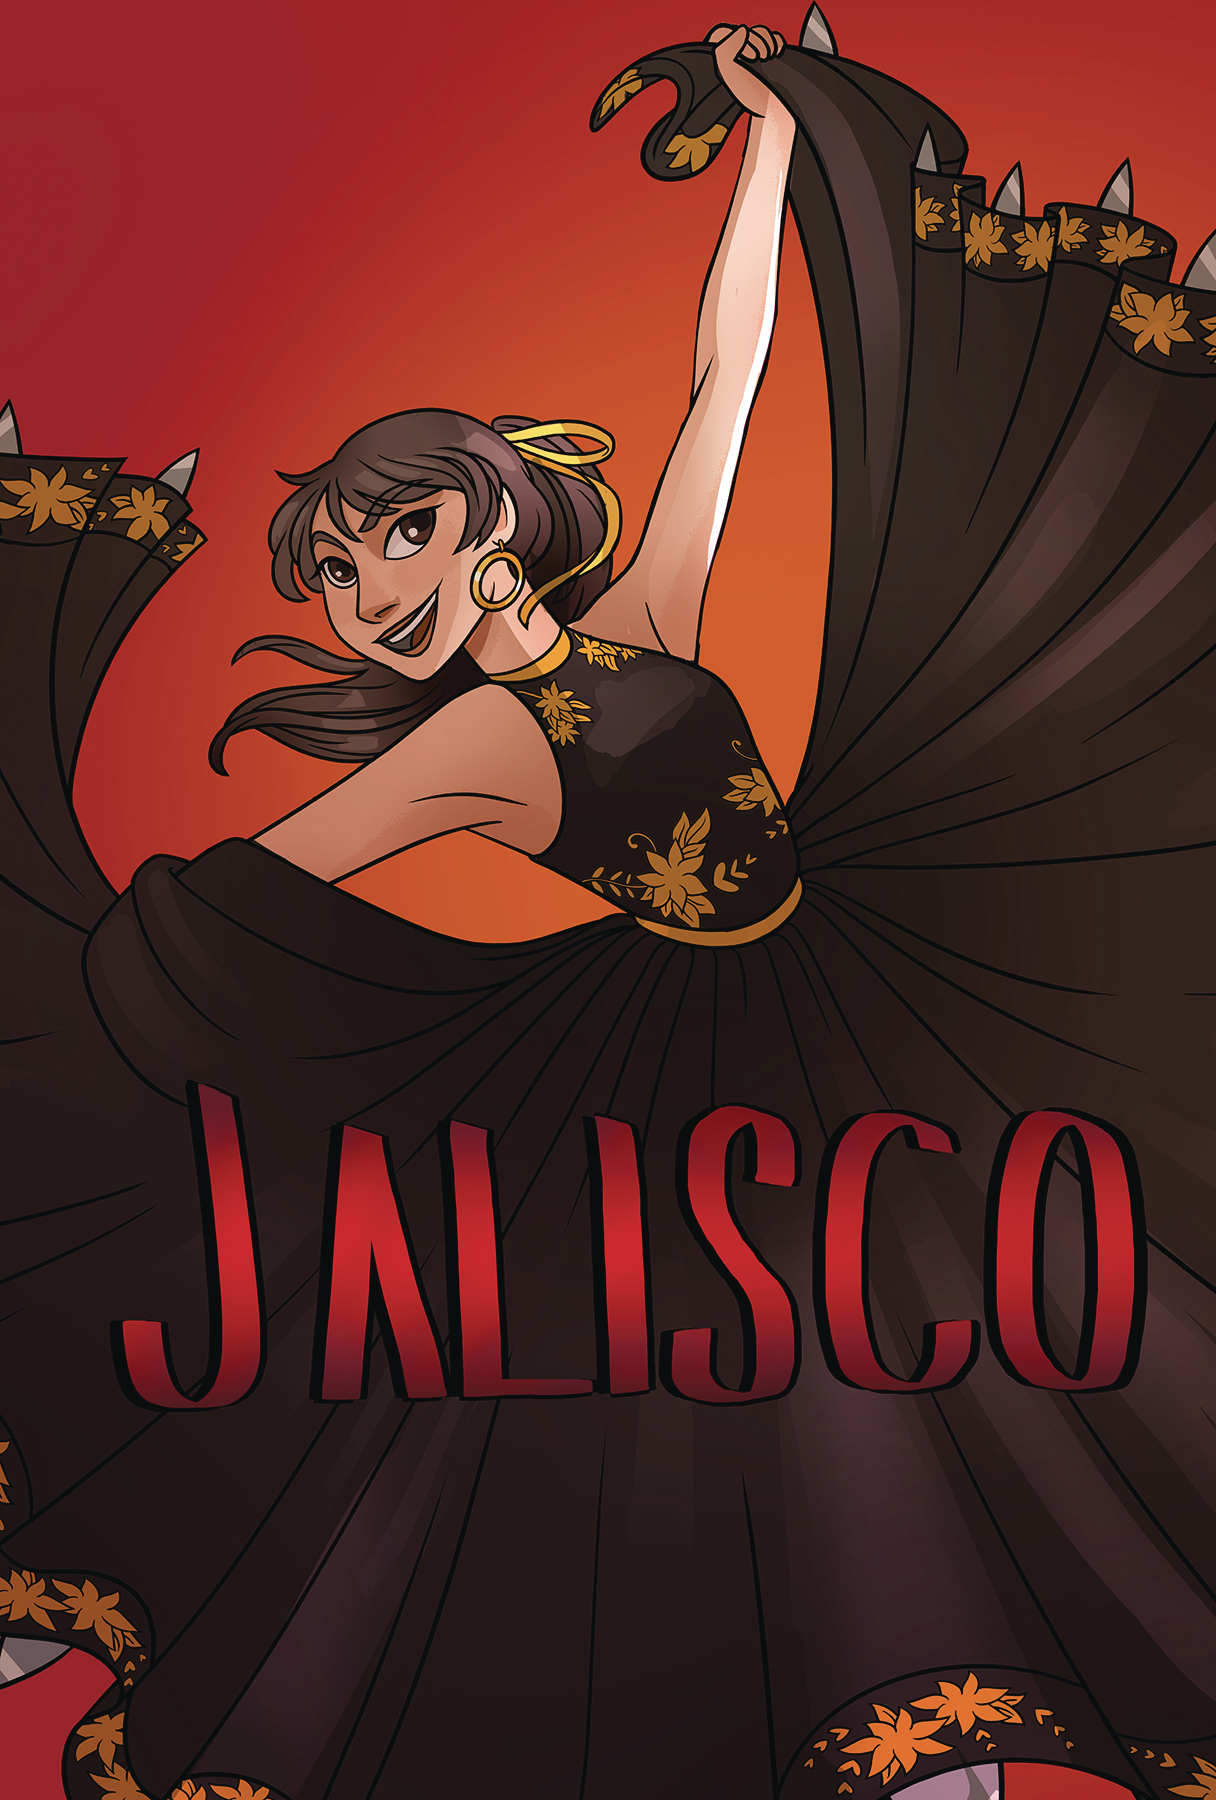 Jalisco Latina Superhero Graphic Novel